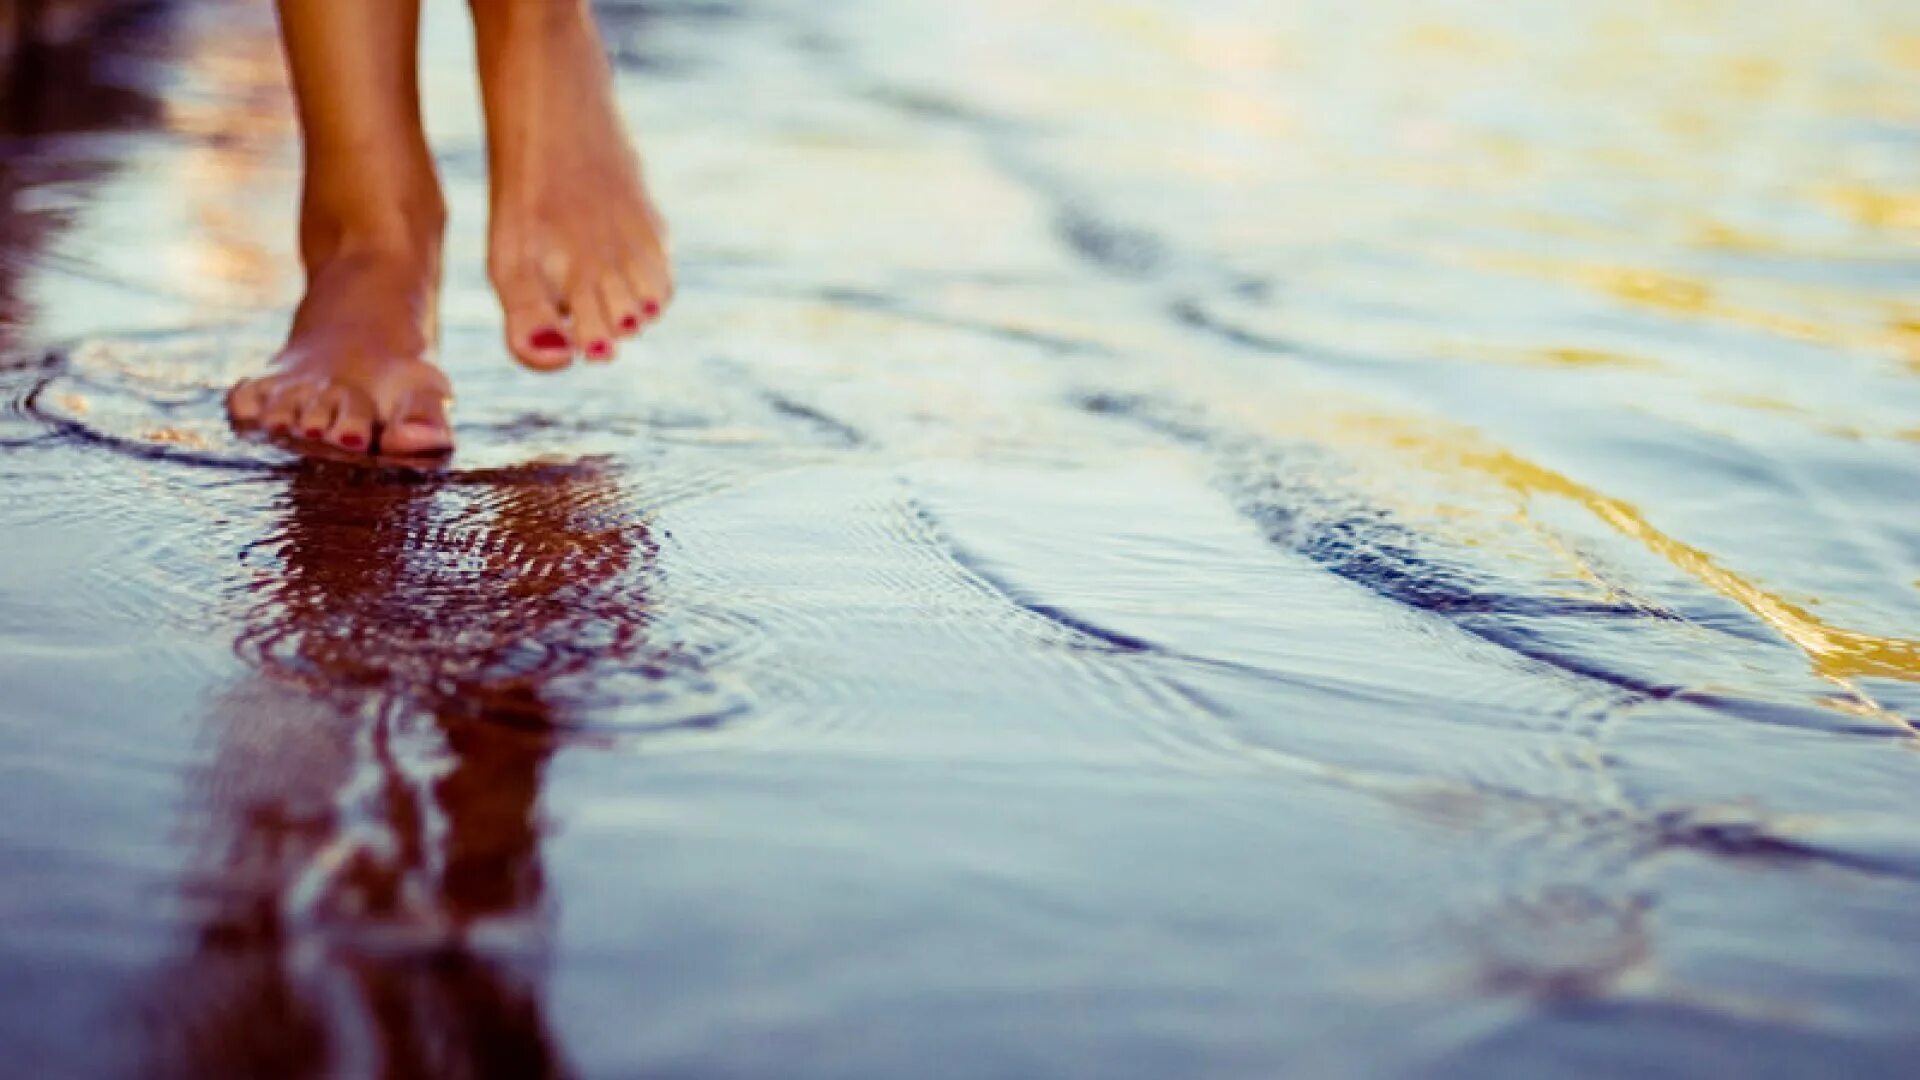 Ноги по воде. Босые ноги в воде. Ноги в луже. Маленькими шагами к счастью. Что бы ни делалось на свете